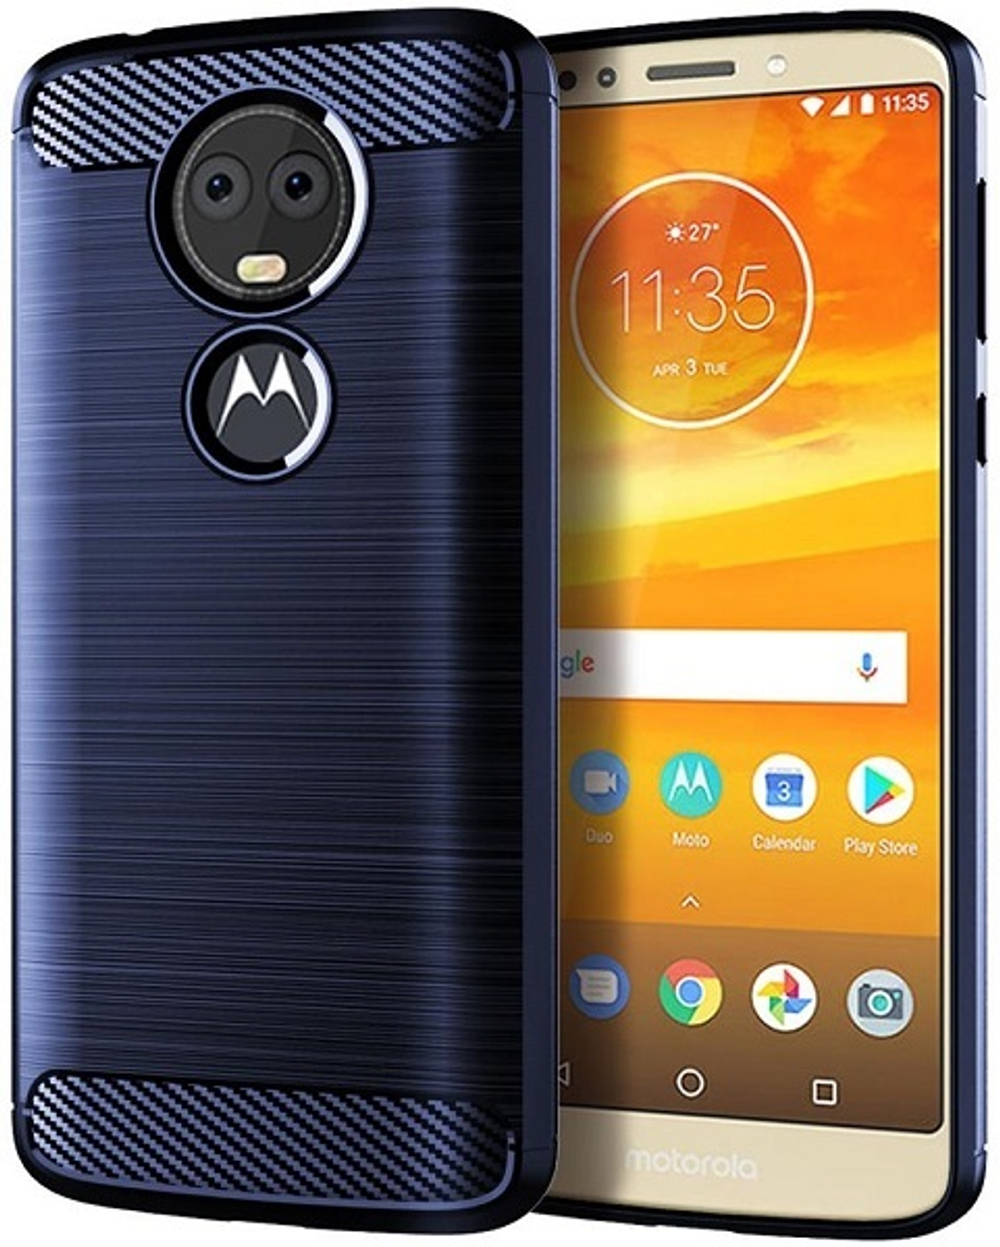 Чехол для Motorola Moto E5 Plus (E5 Supra) цвет Blue (синий), серия Carbon от Caseport